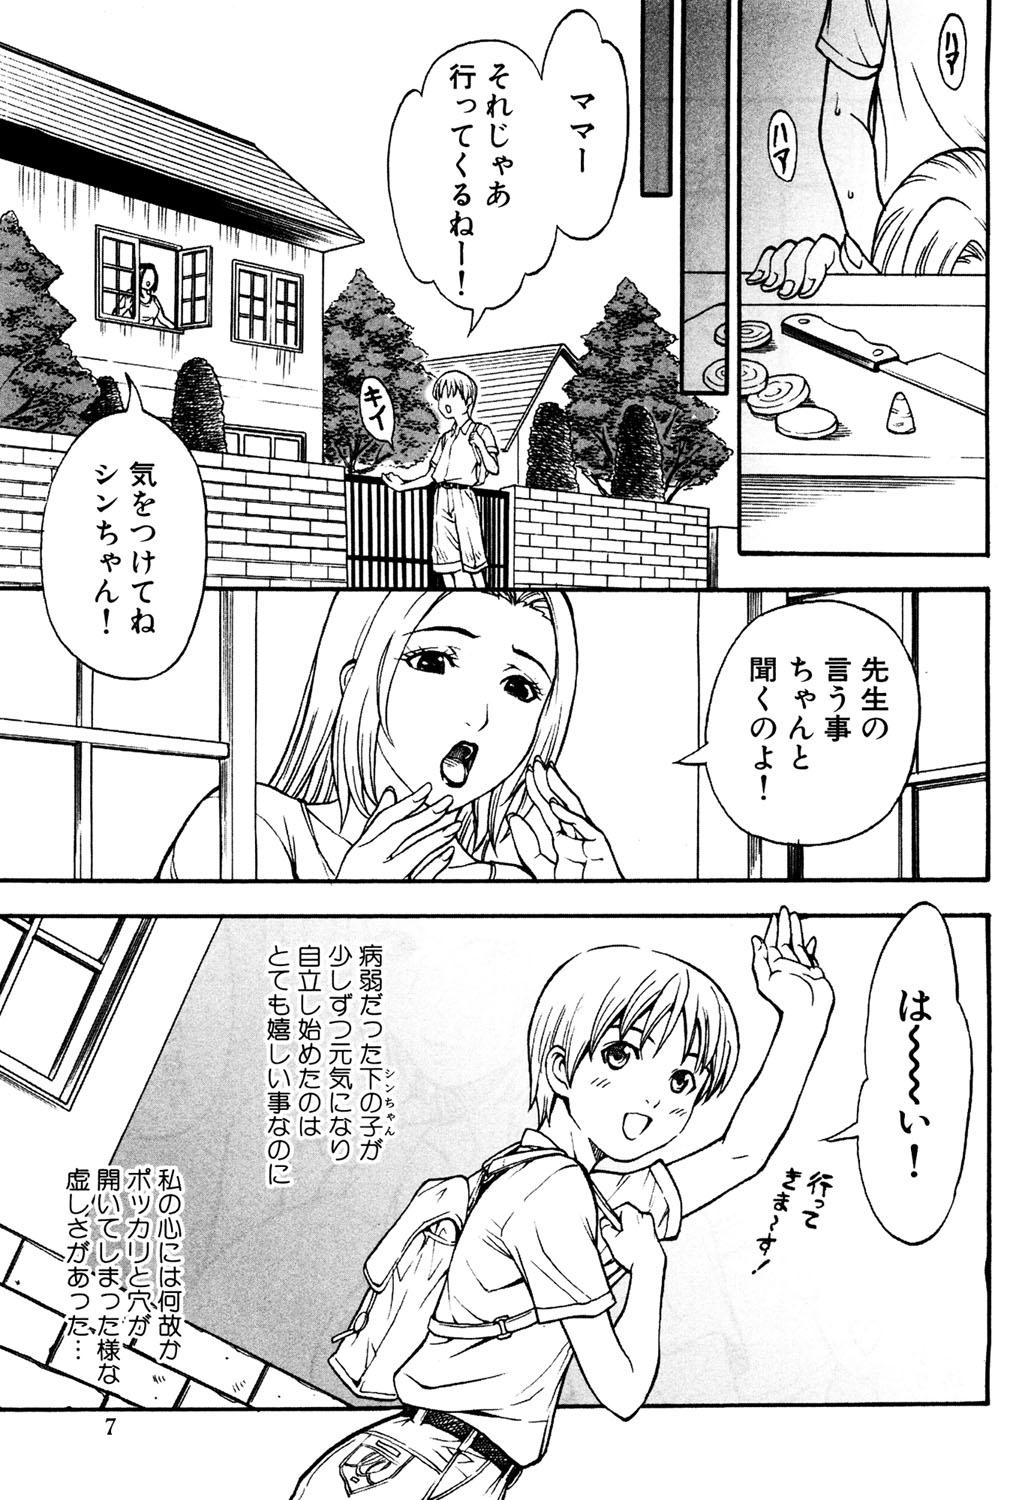 [Kuniaki Kitakata] Boku no Mama (My Mom) Chapters 1-4 60